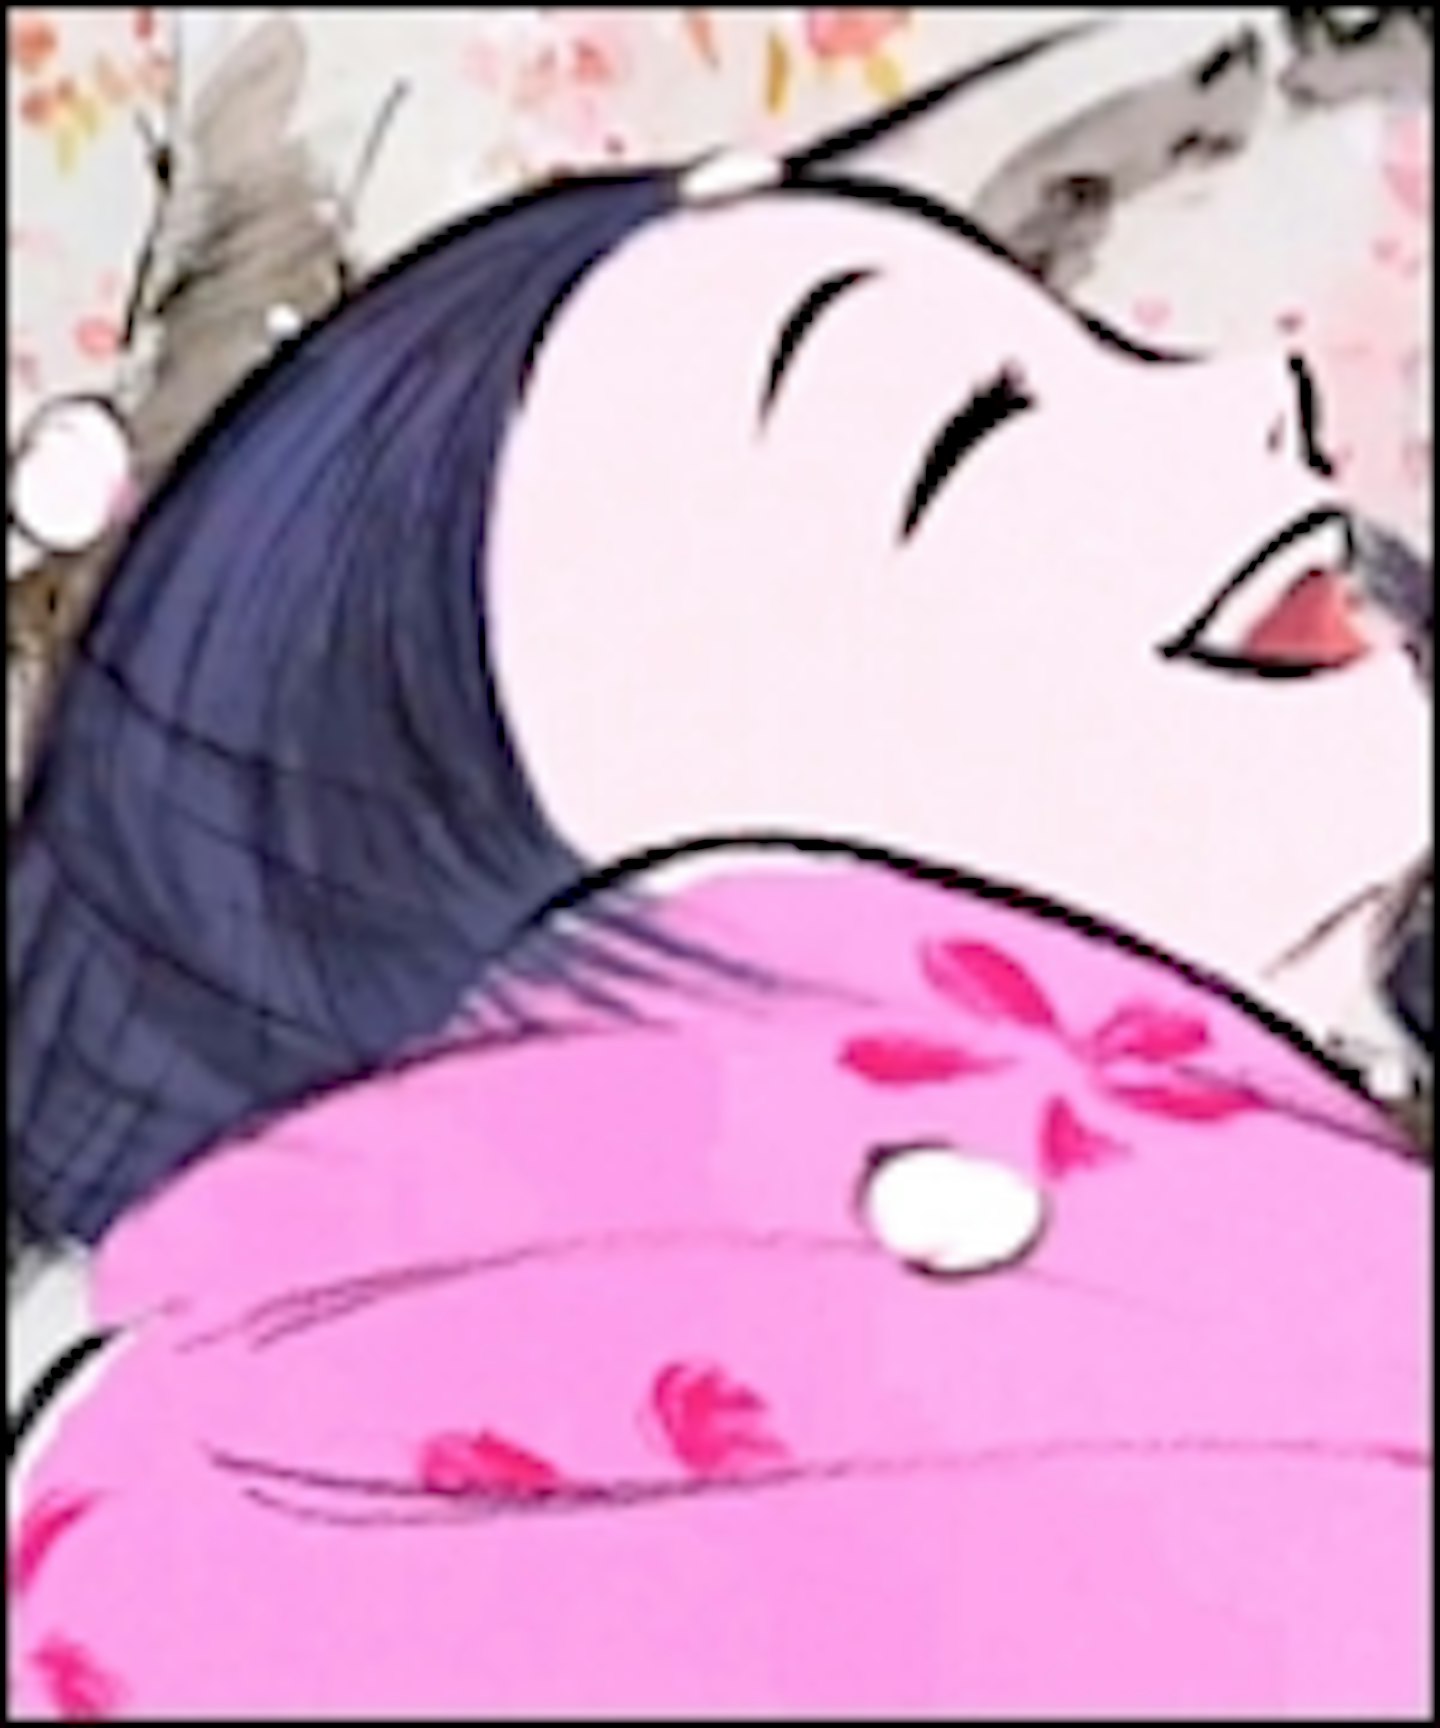 New Trailer For Studio Ghibli's Princess Kaguya